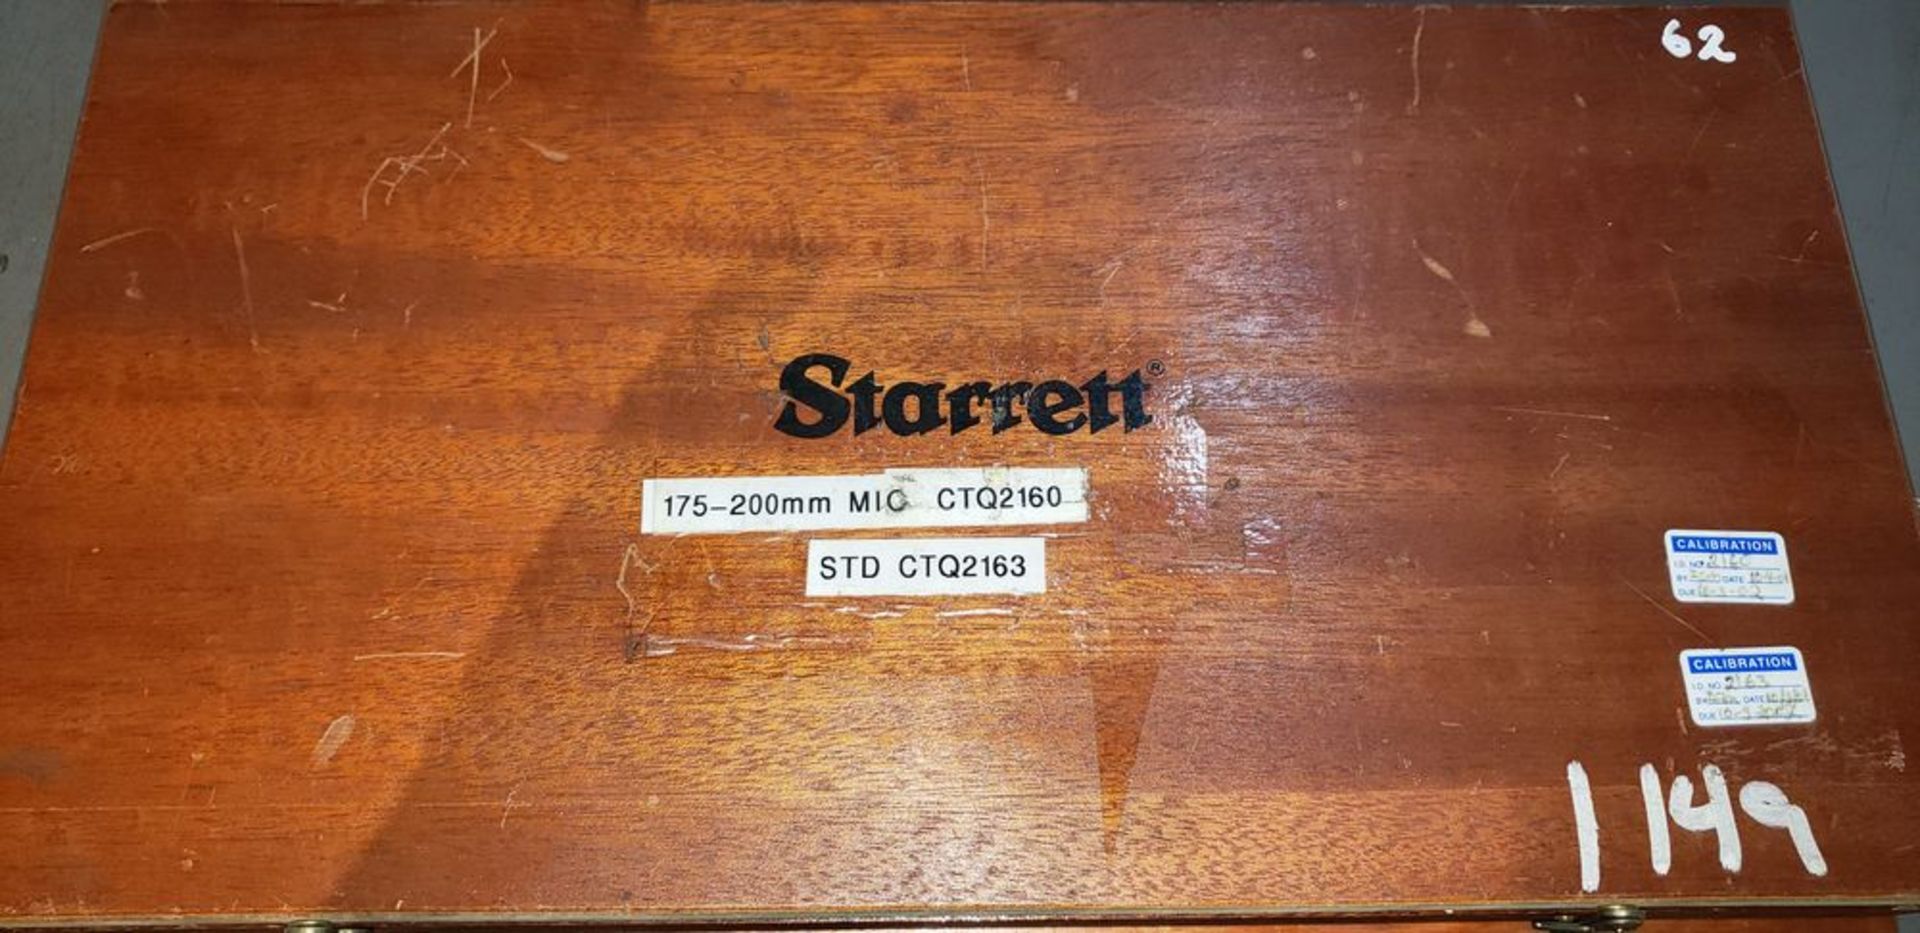 Starrett No. 436M Micrometer - Image 2 of 2